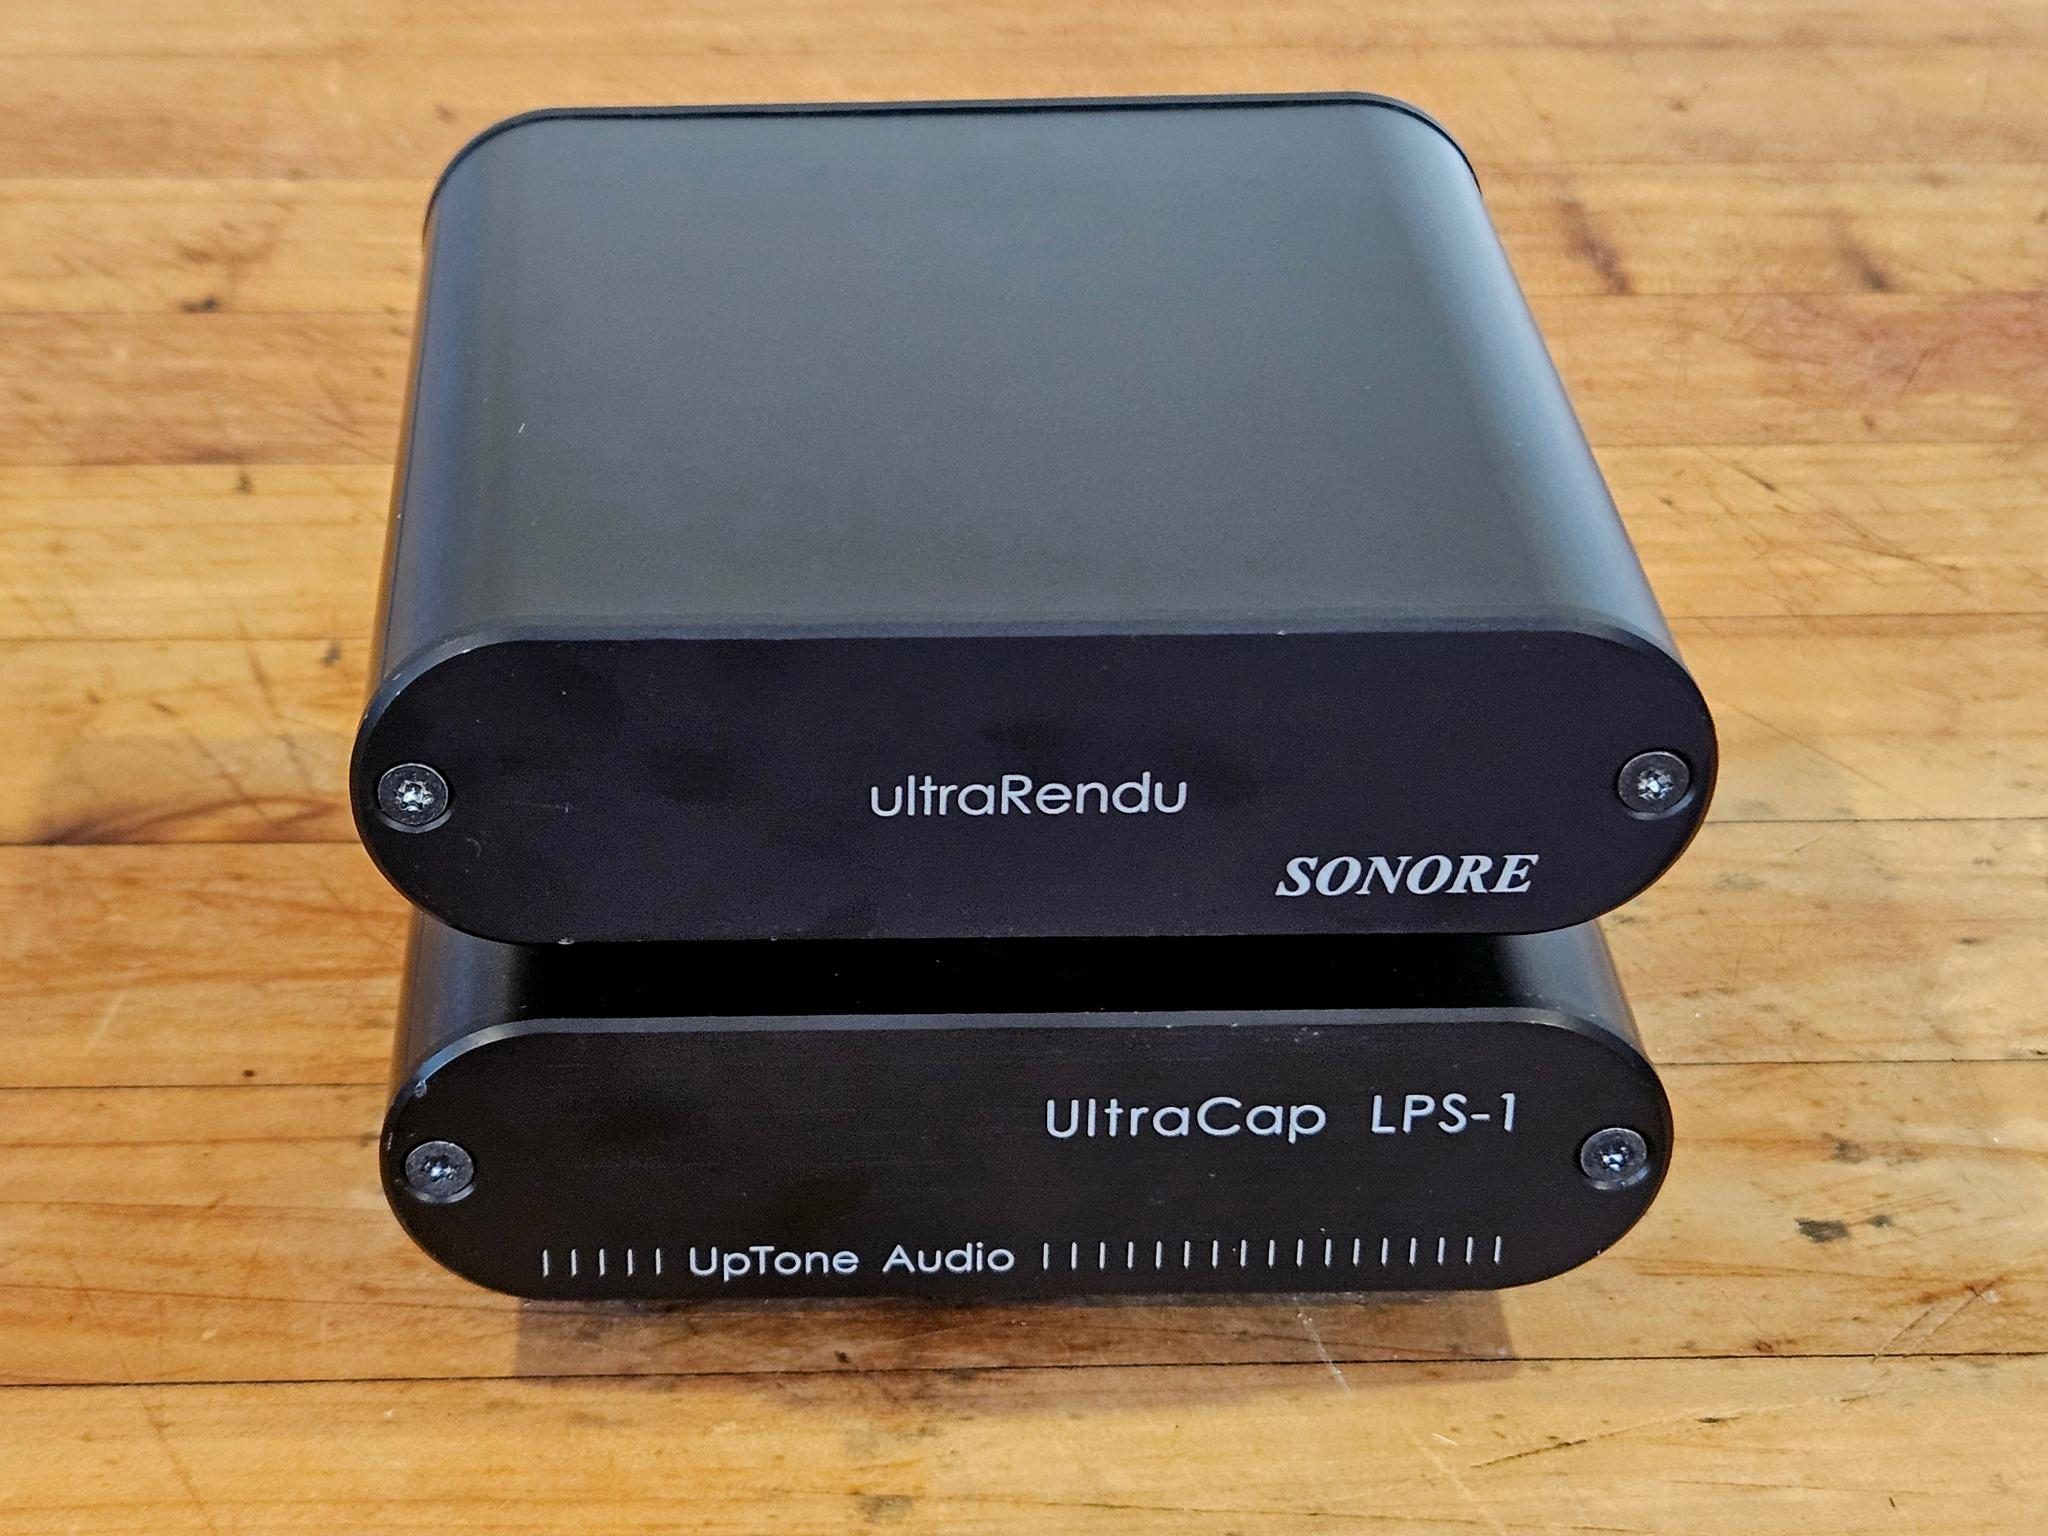 Sonore UltraRendu v1.3 + UpTone Audio UltraCap LPS 1 + ...